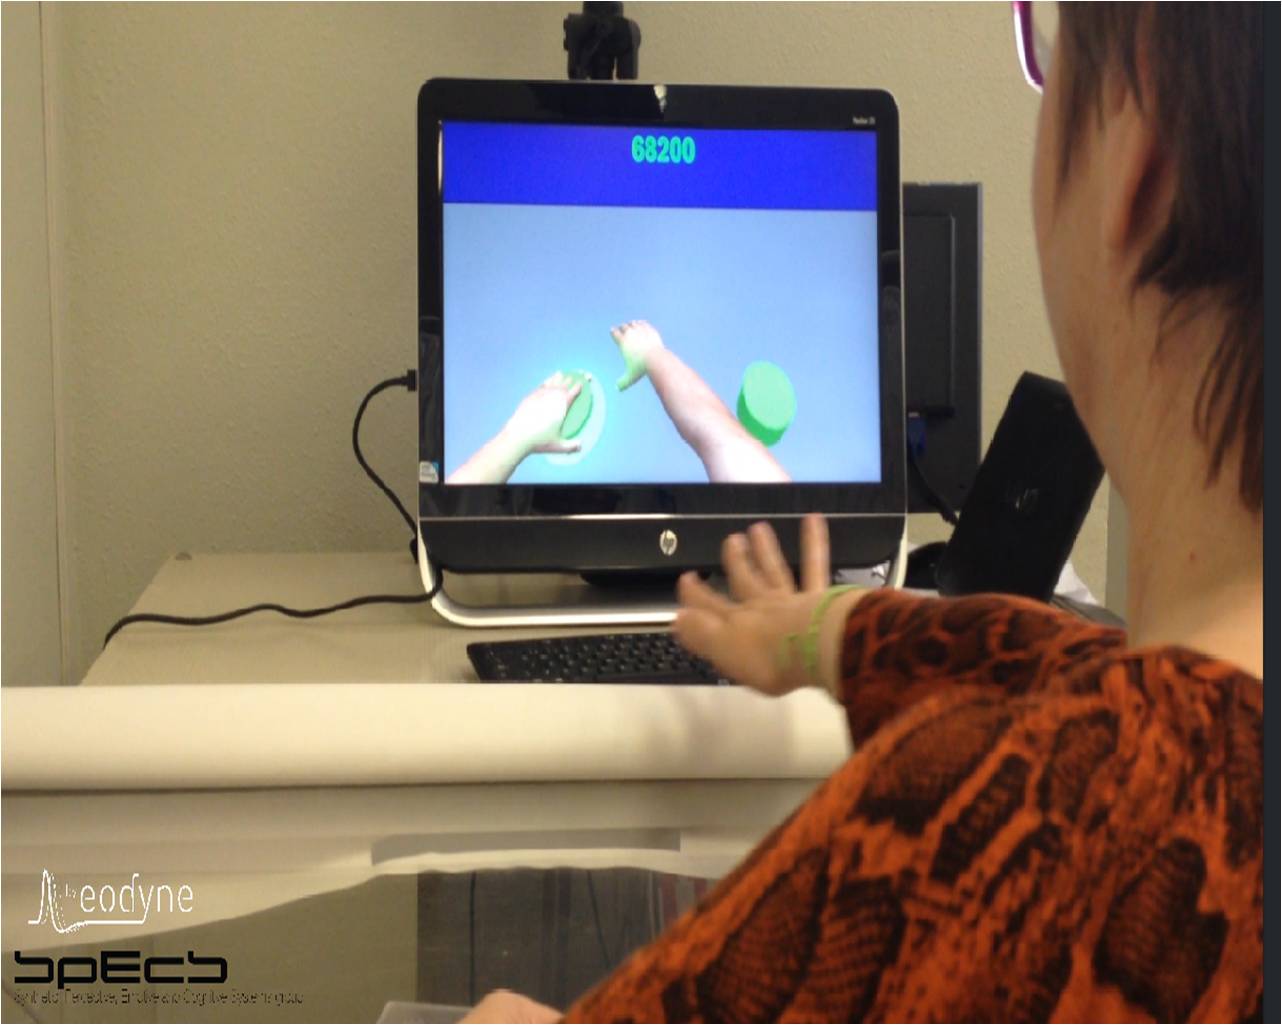 Un paciente, probando la realidad virtual. Fuente: UPF.